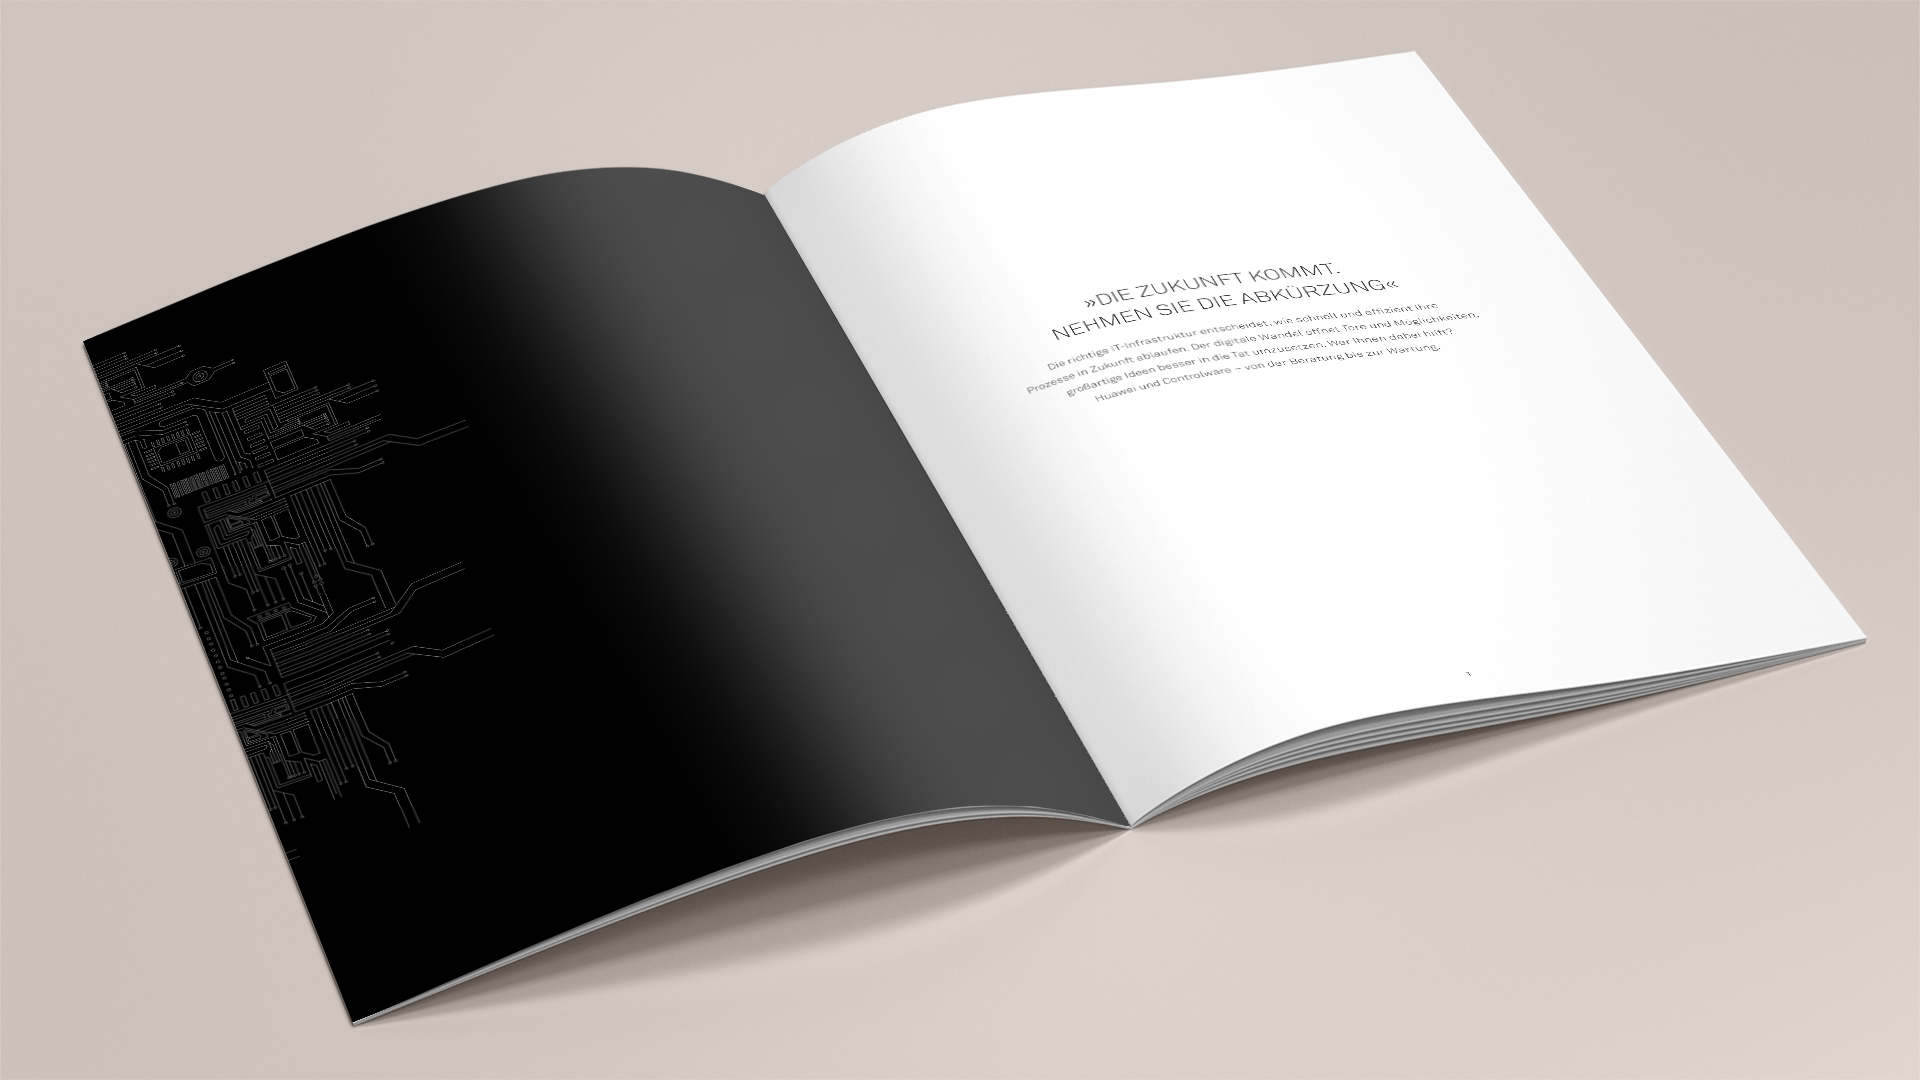 Hochwertige Broschüre für Hauwei mit Editorial Design von das formt - Designagentur aus München